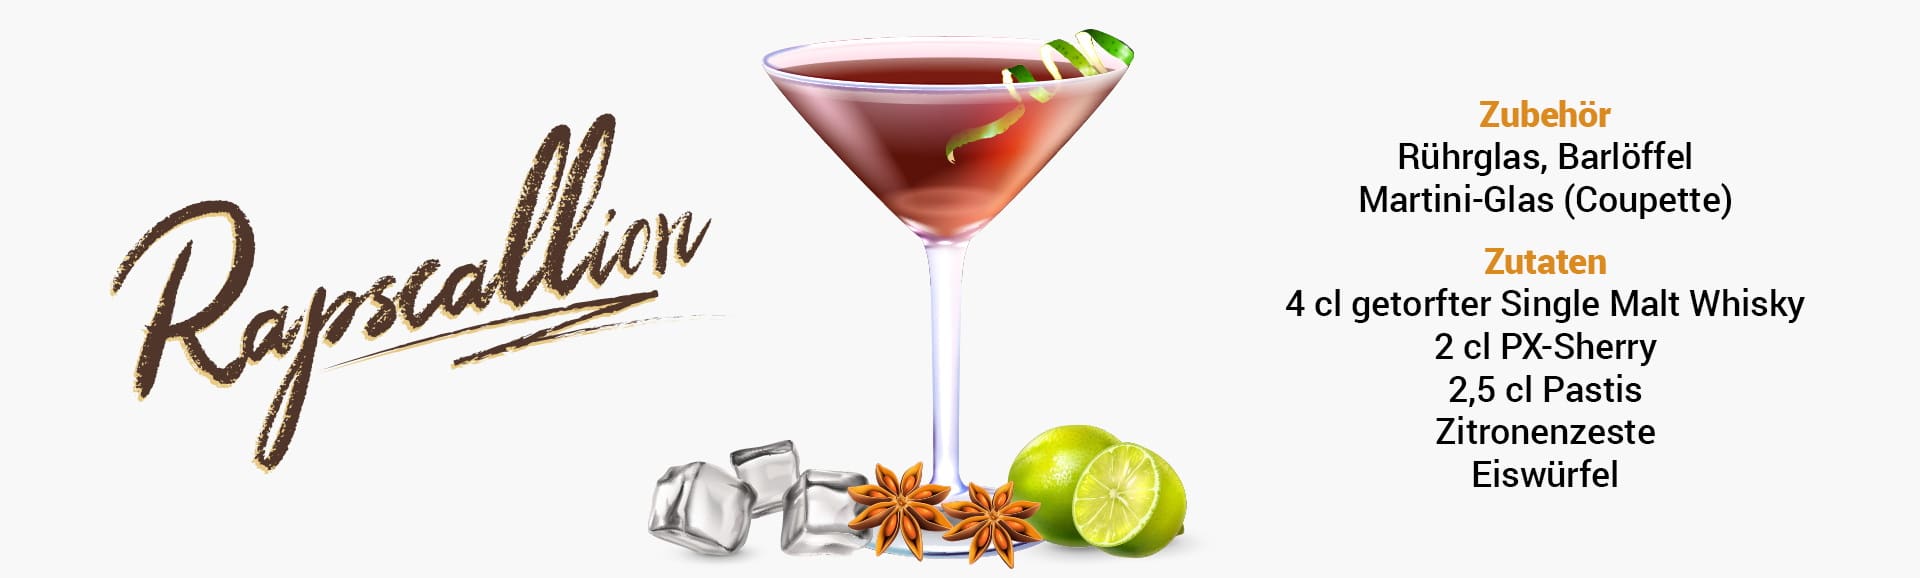 Whisky Cocktail: Rapscallion Rezept + Tipp